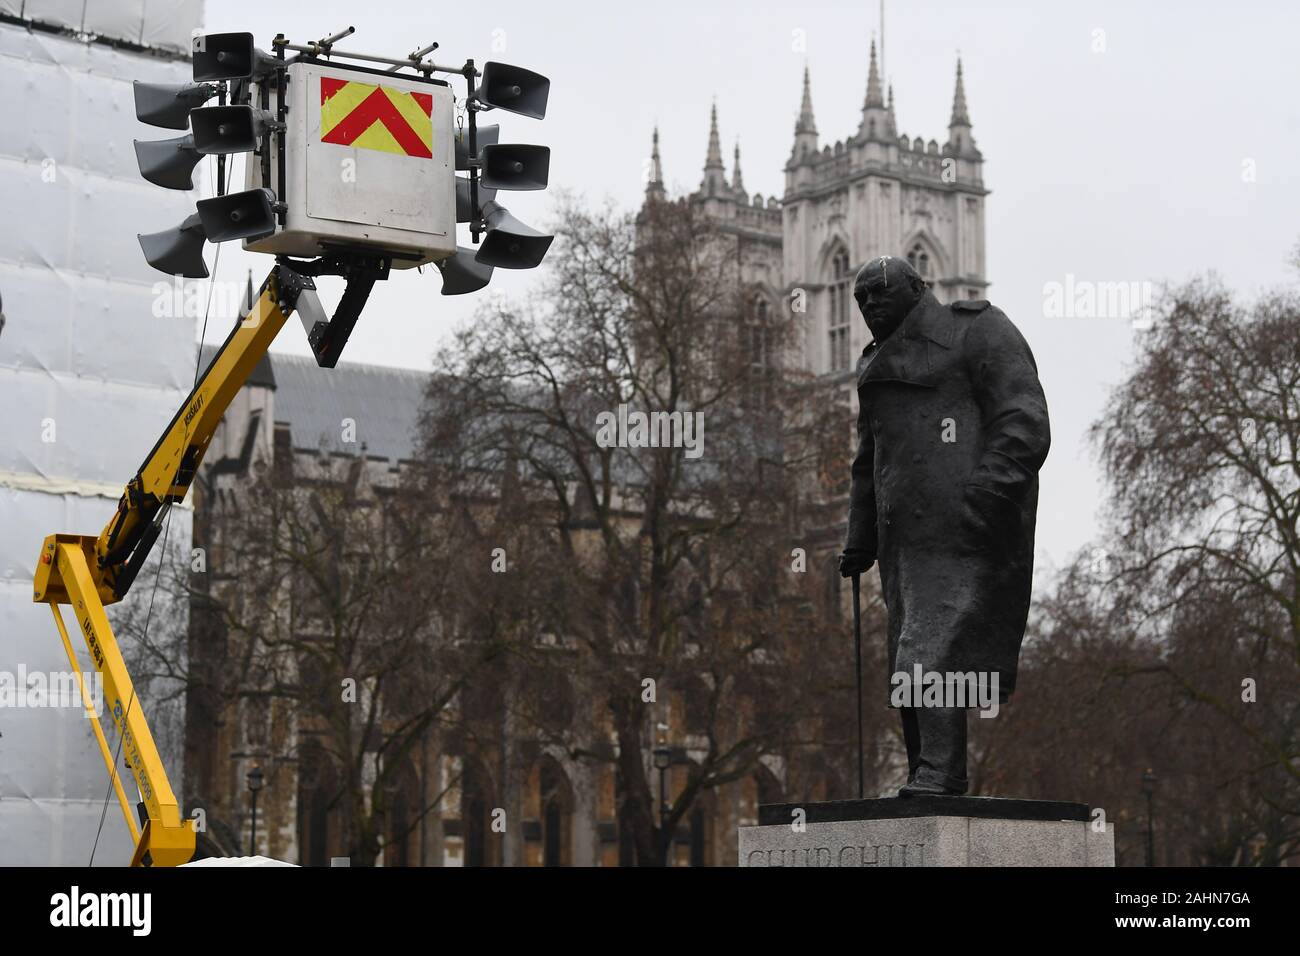 Eine Lautsprecheranlage errichtet in der Nähe des Houses of Parliament in London vor dem Neuen Jahr feier Feuerwerk. Stockfoto